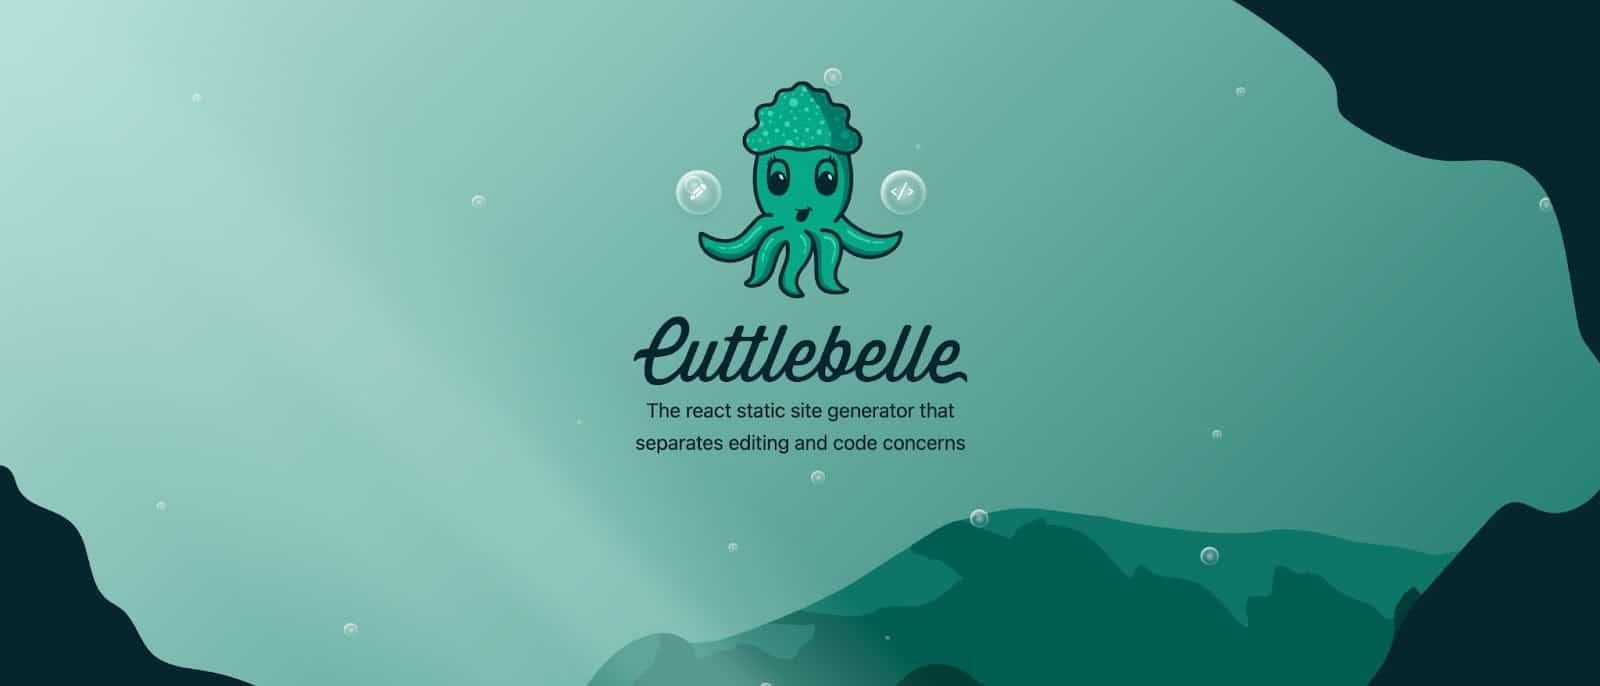 De startpagina van de Cuttlebelle website